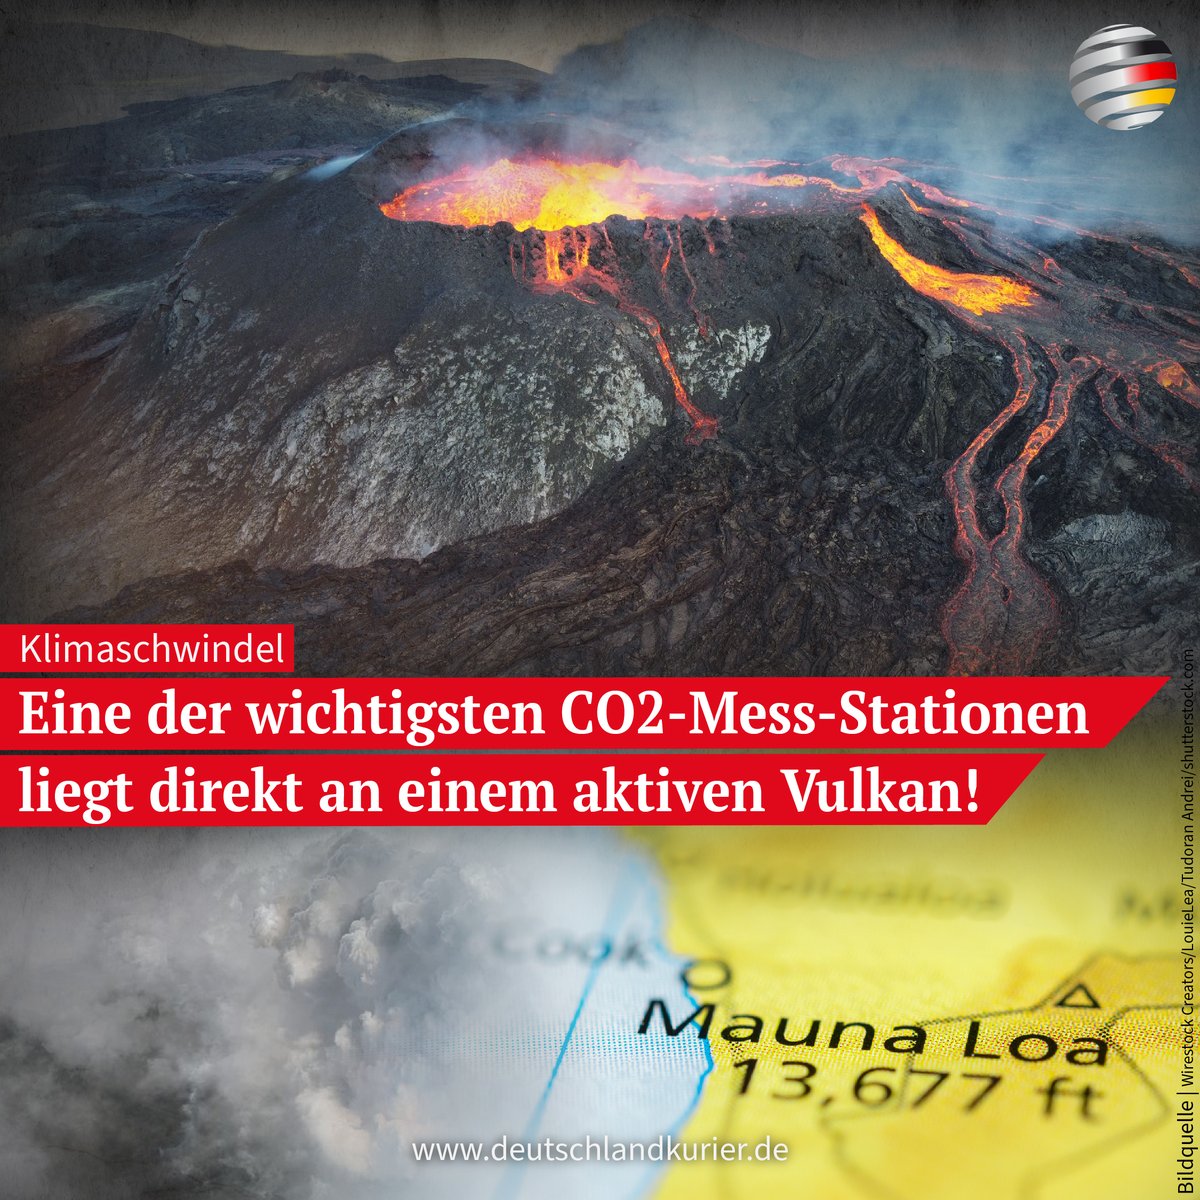 #Klimaschwindel: Eine der wichtigsten #CO2-Mess-Stationen liegt direkt an einem aktiven #Vulkan!

deutschlandkurier.de/2023/06/klimas…